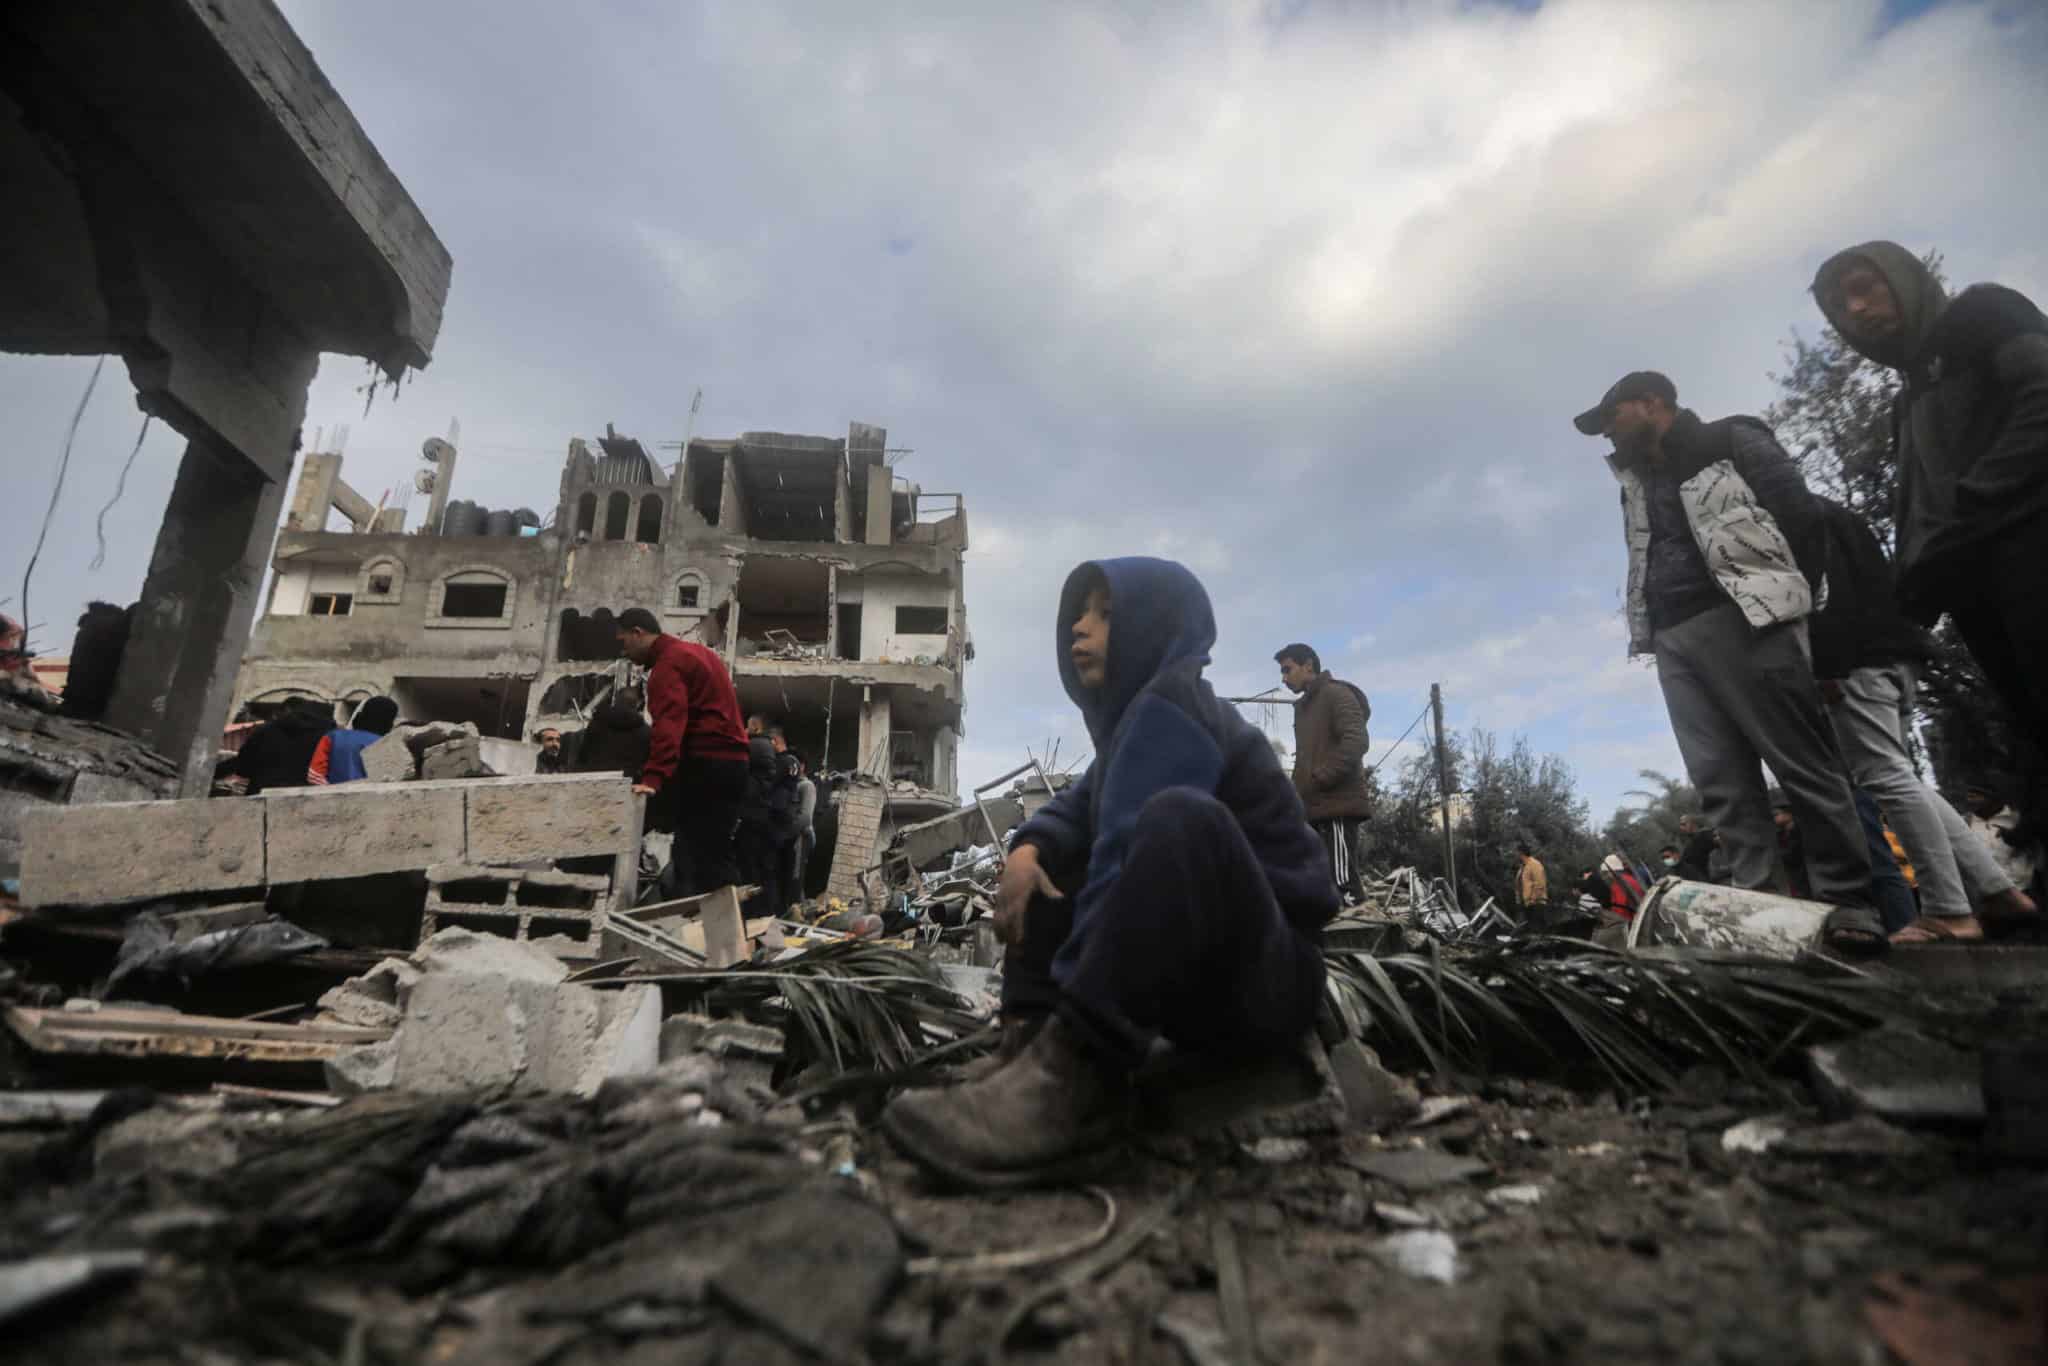 Les vœux de Noël pour la « paix sur Terre » sont vides de sens sans cessez-le-feu à Gaza